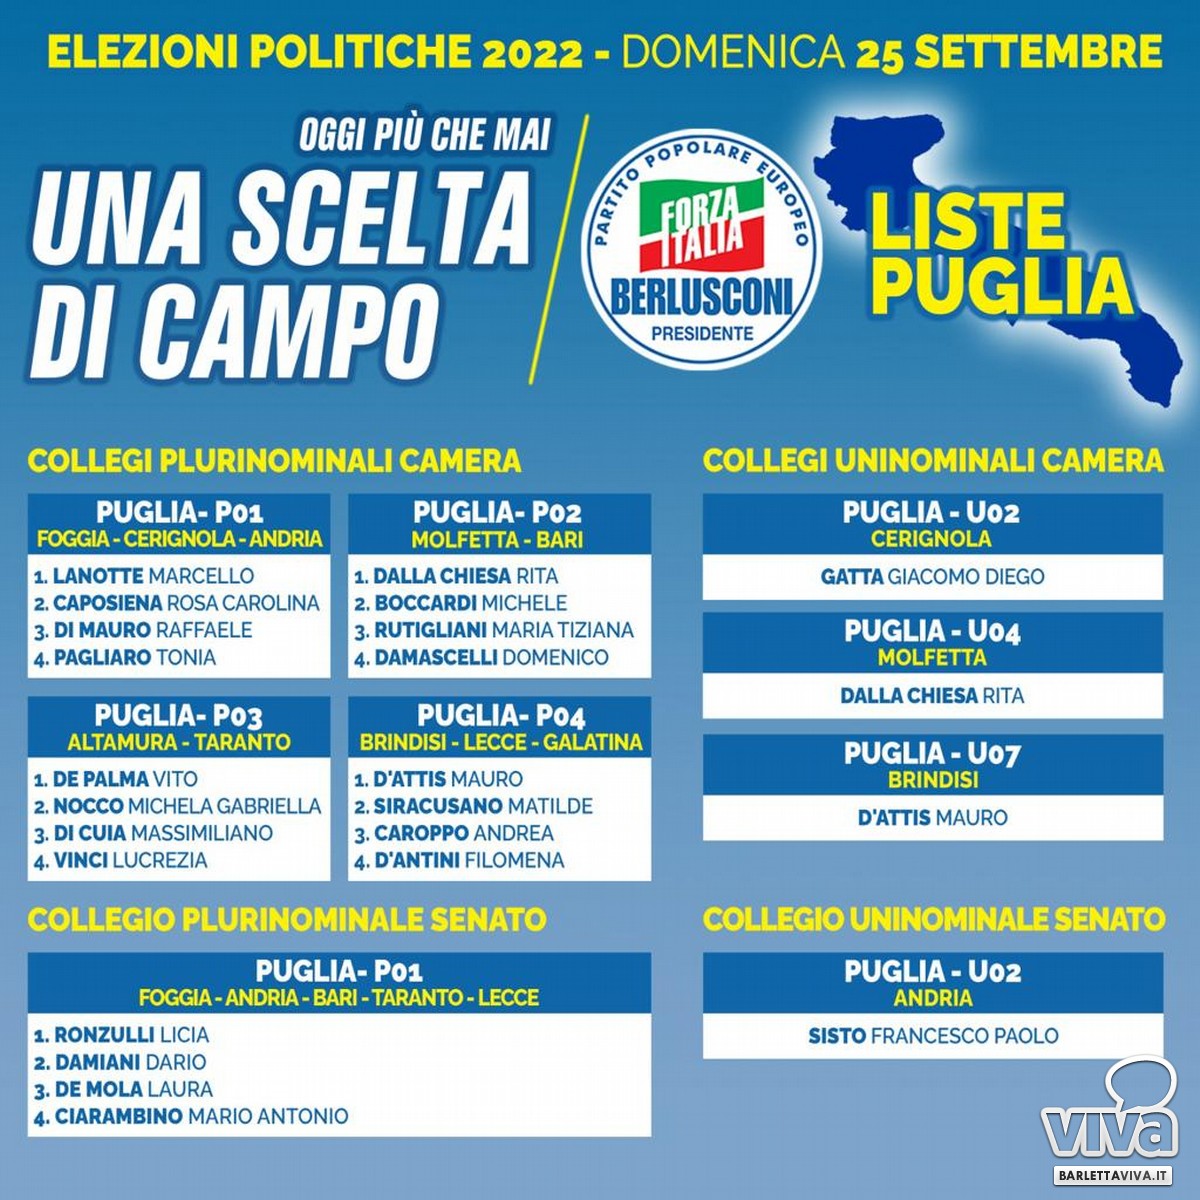 Liste Puglia Forza Italia